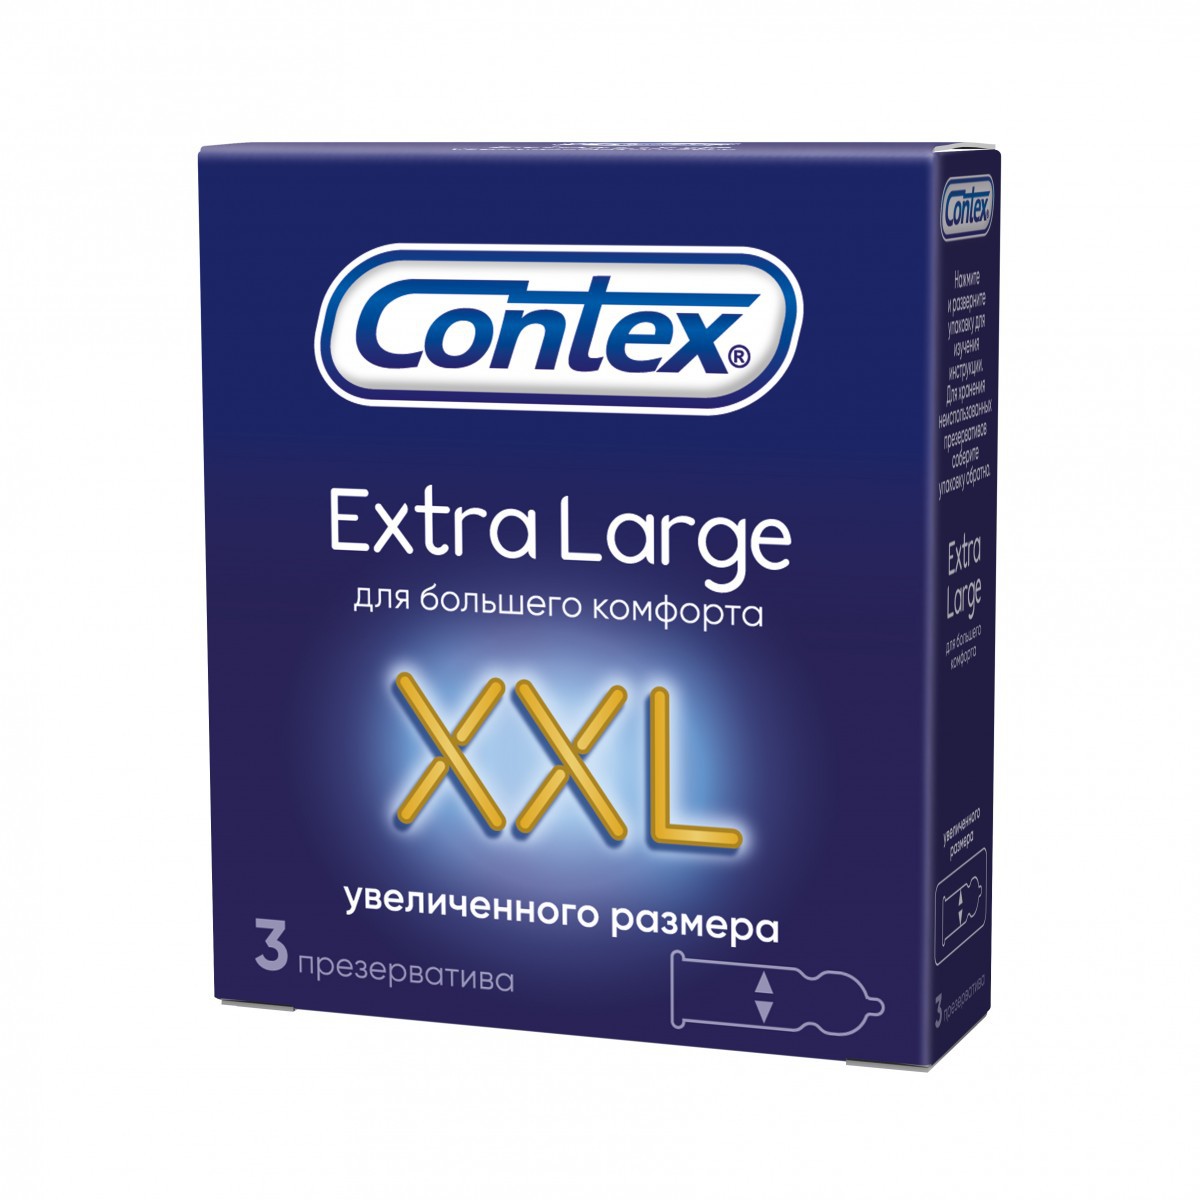 Презервативы CONTEX Extra Large XXL увеличенного размера N3 уп